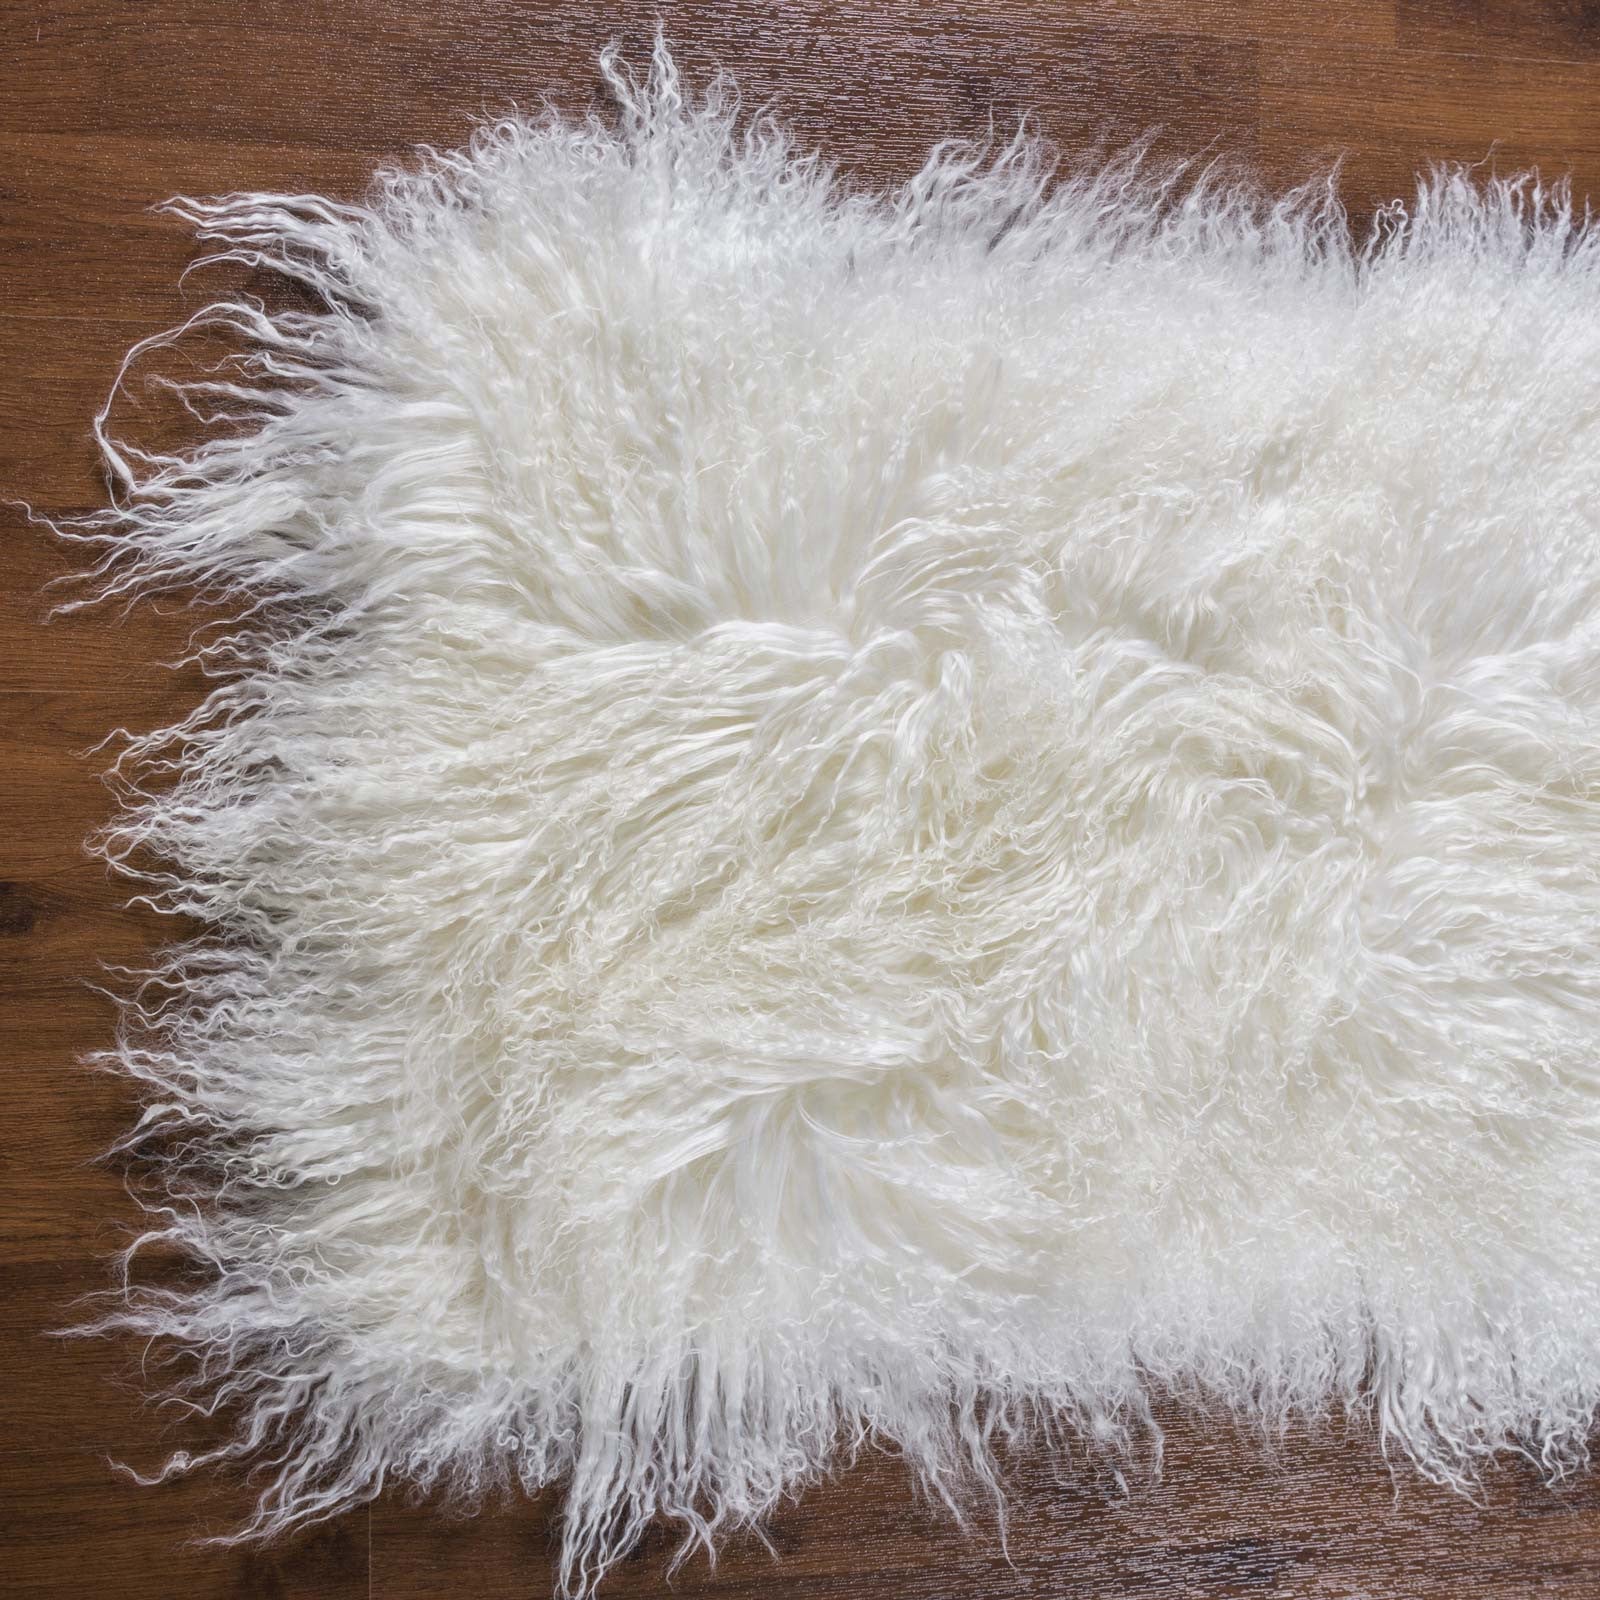 Tibetan Sheep Skin Rug - Rodeo Cowhide Rugs